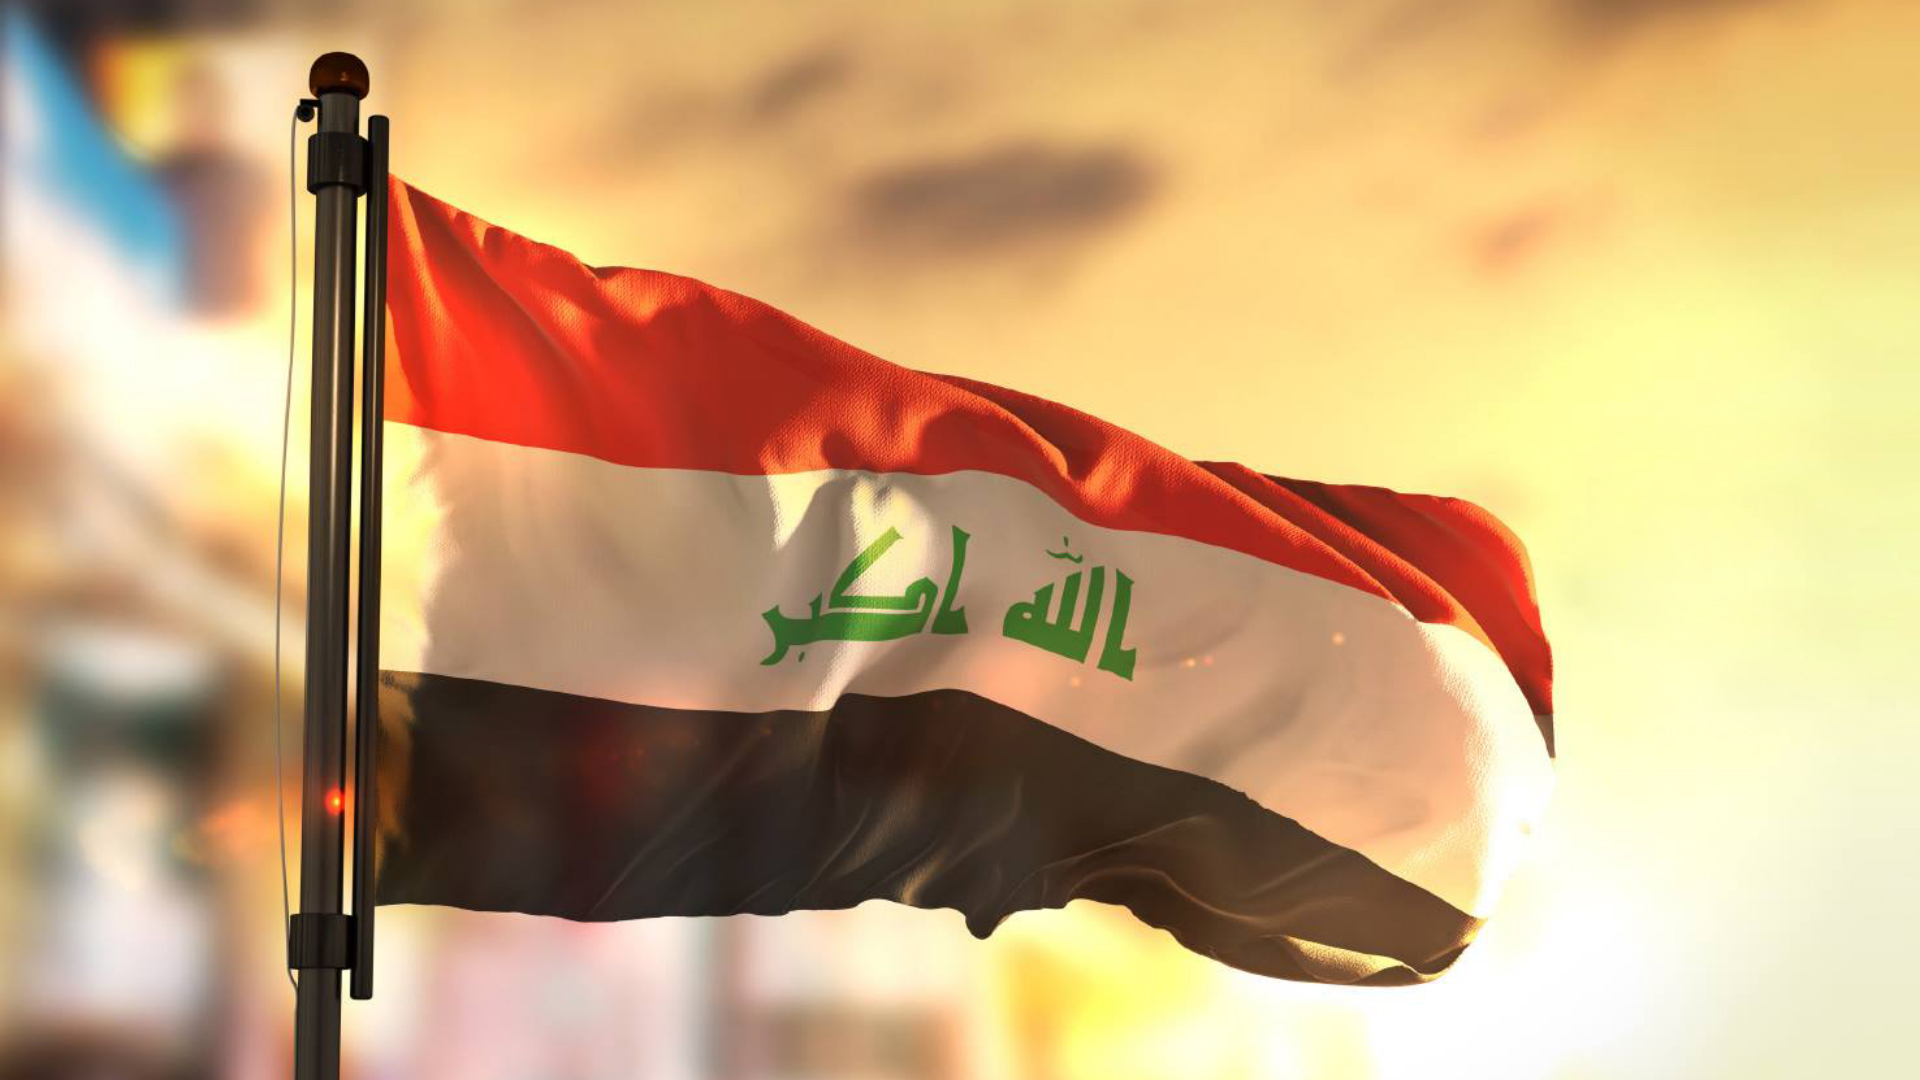 انضمام العراق رسمياً إلى اتفاق باريس للتغيرات المناخية